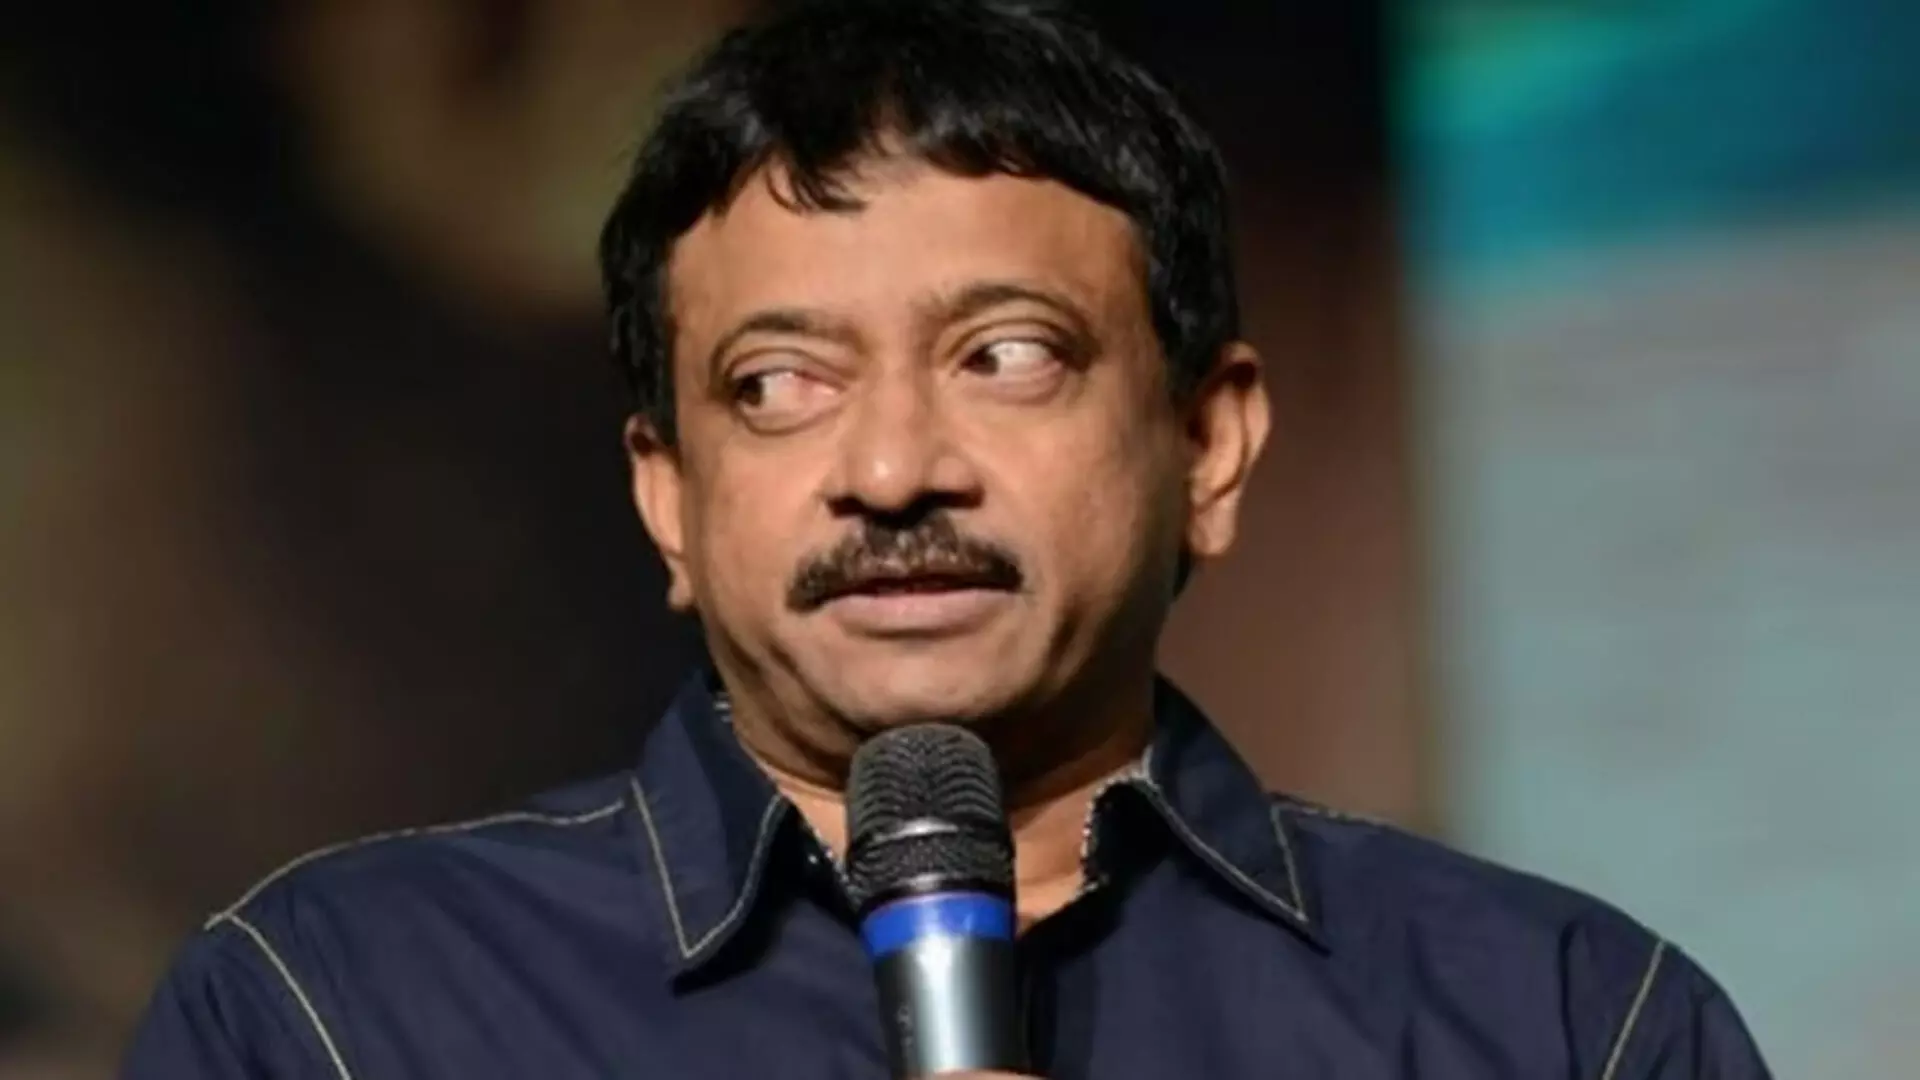 फिल्म निर्माता राम गोपाल वर्मा ने की राजनीति में एंट्री, पीठापुरम से लड़ेंगे चुनाव